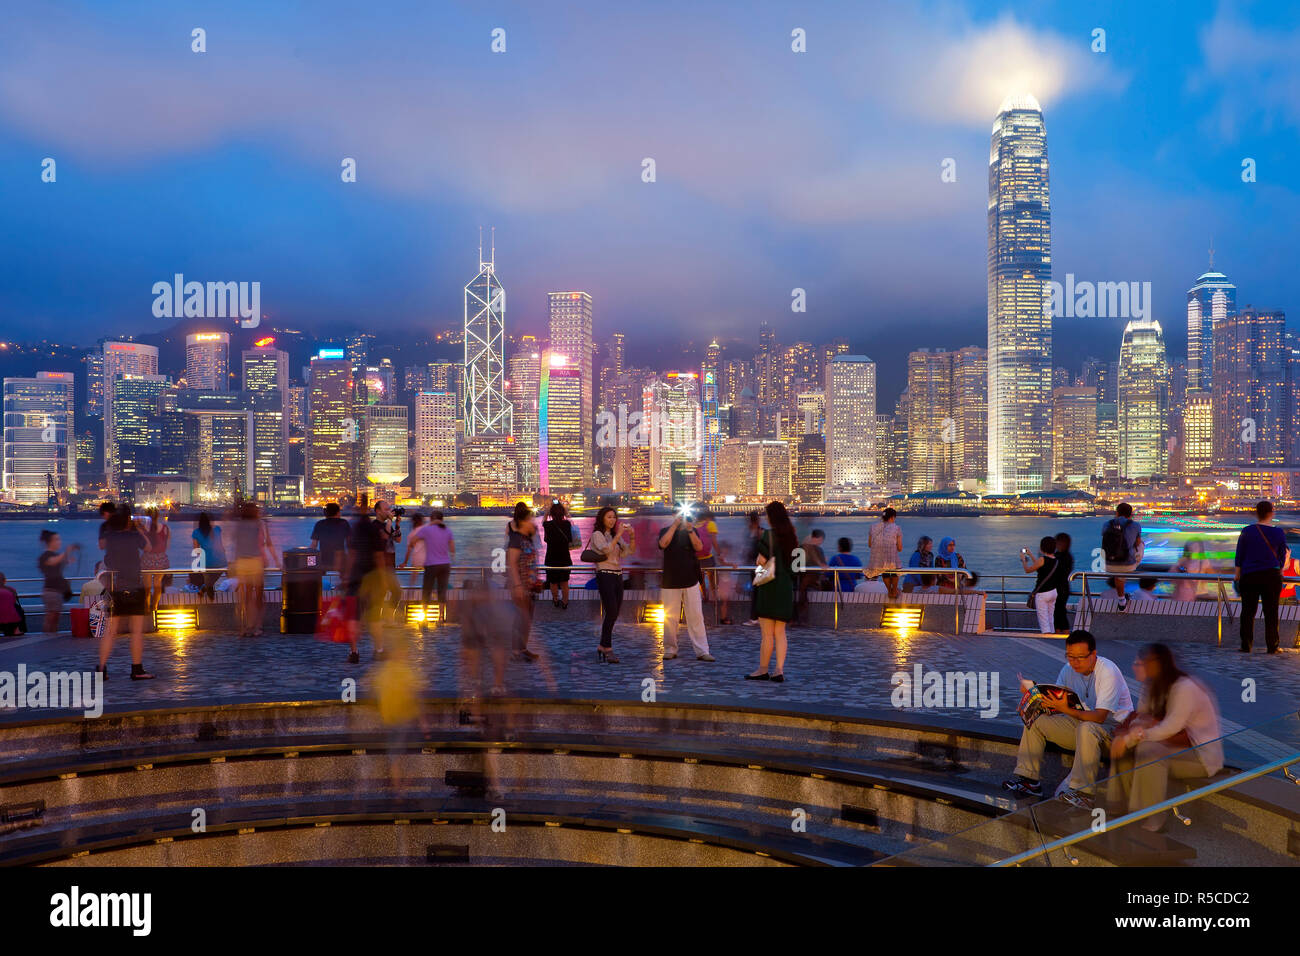 Skyline di Hong Kong al crepuscolo, centrale degli affari e il quartiere finanziario, la Bank of China building, Isola di Hong Kong, Cina Foto Stock